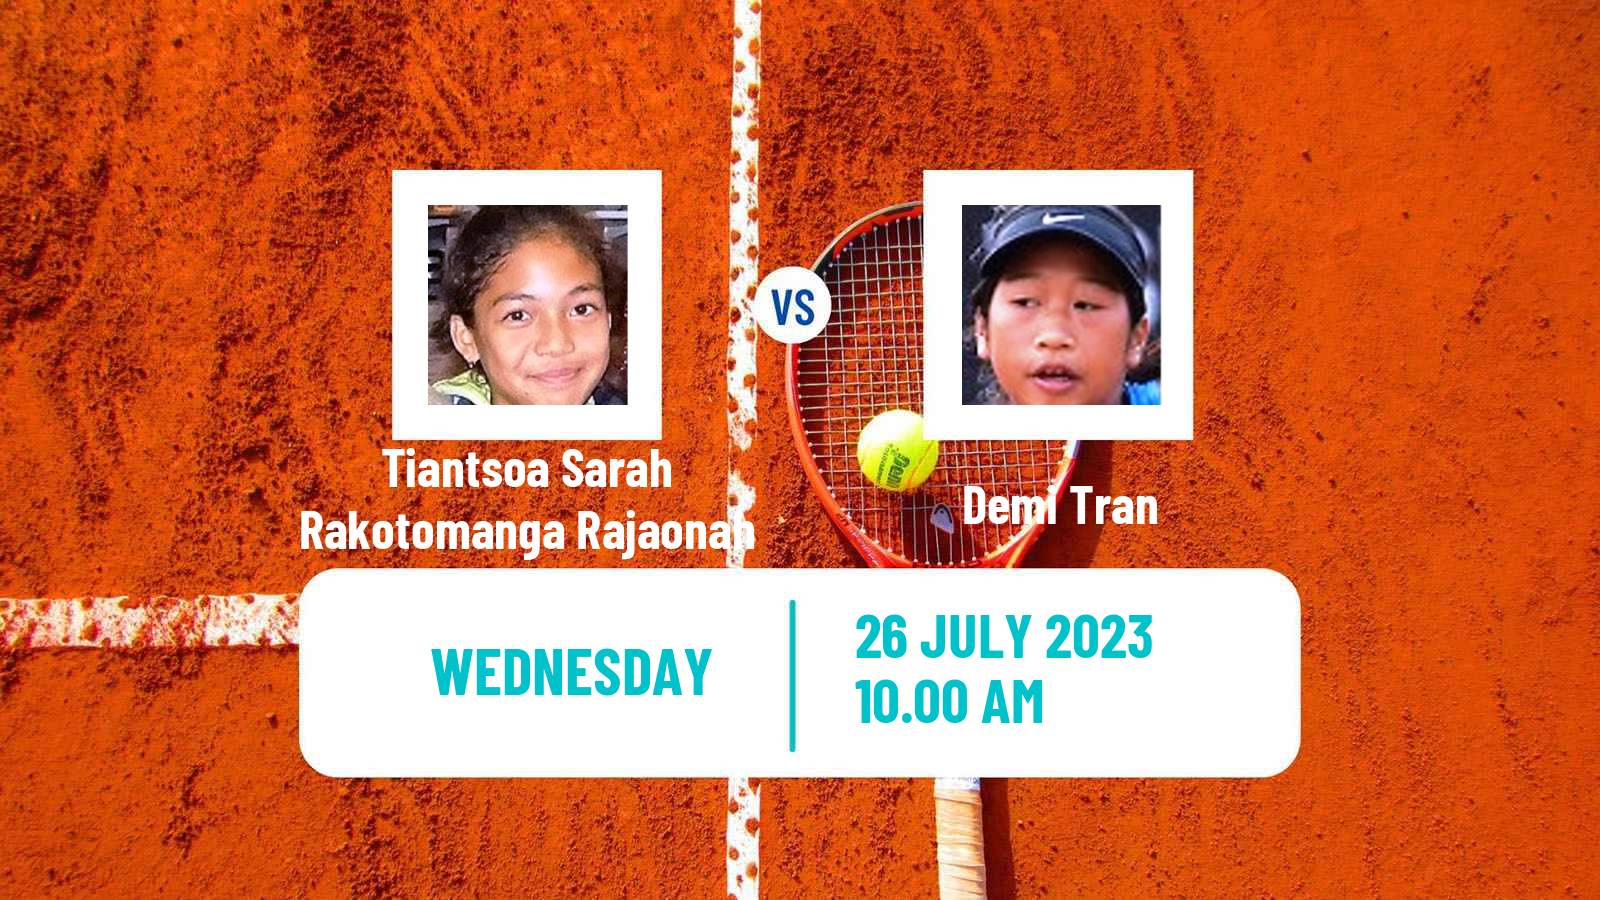 Tennis ITF W15 Casablanca 2 Women Tiantsoa Sarah Rakotomanga Rajaonah - Demi Tran